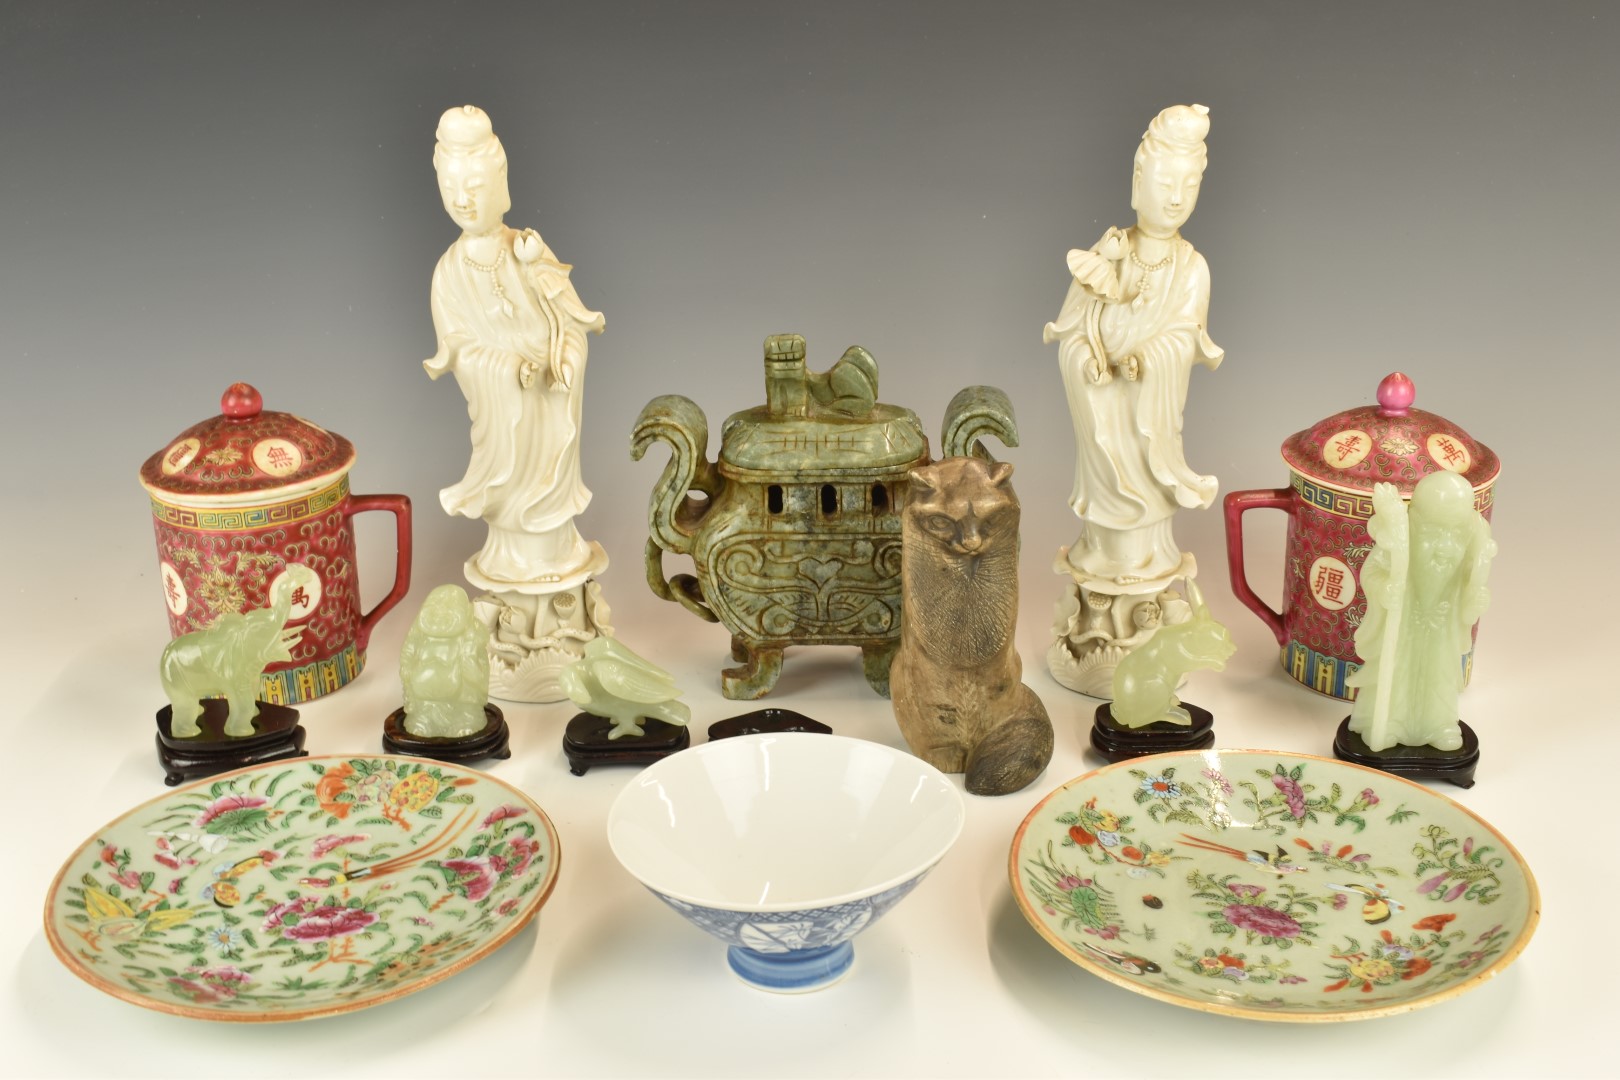 Collection of Chinese ceramics, jadeite / jade, blanc de chine etc, tallest 27cm